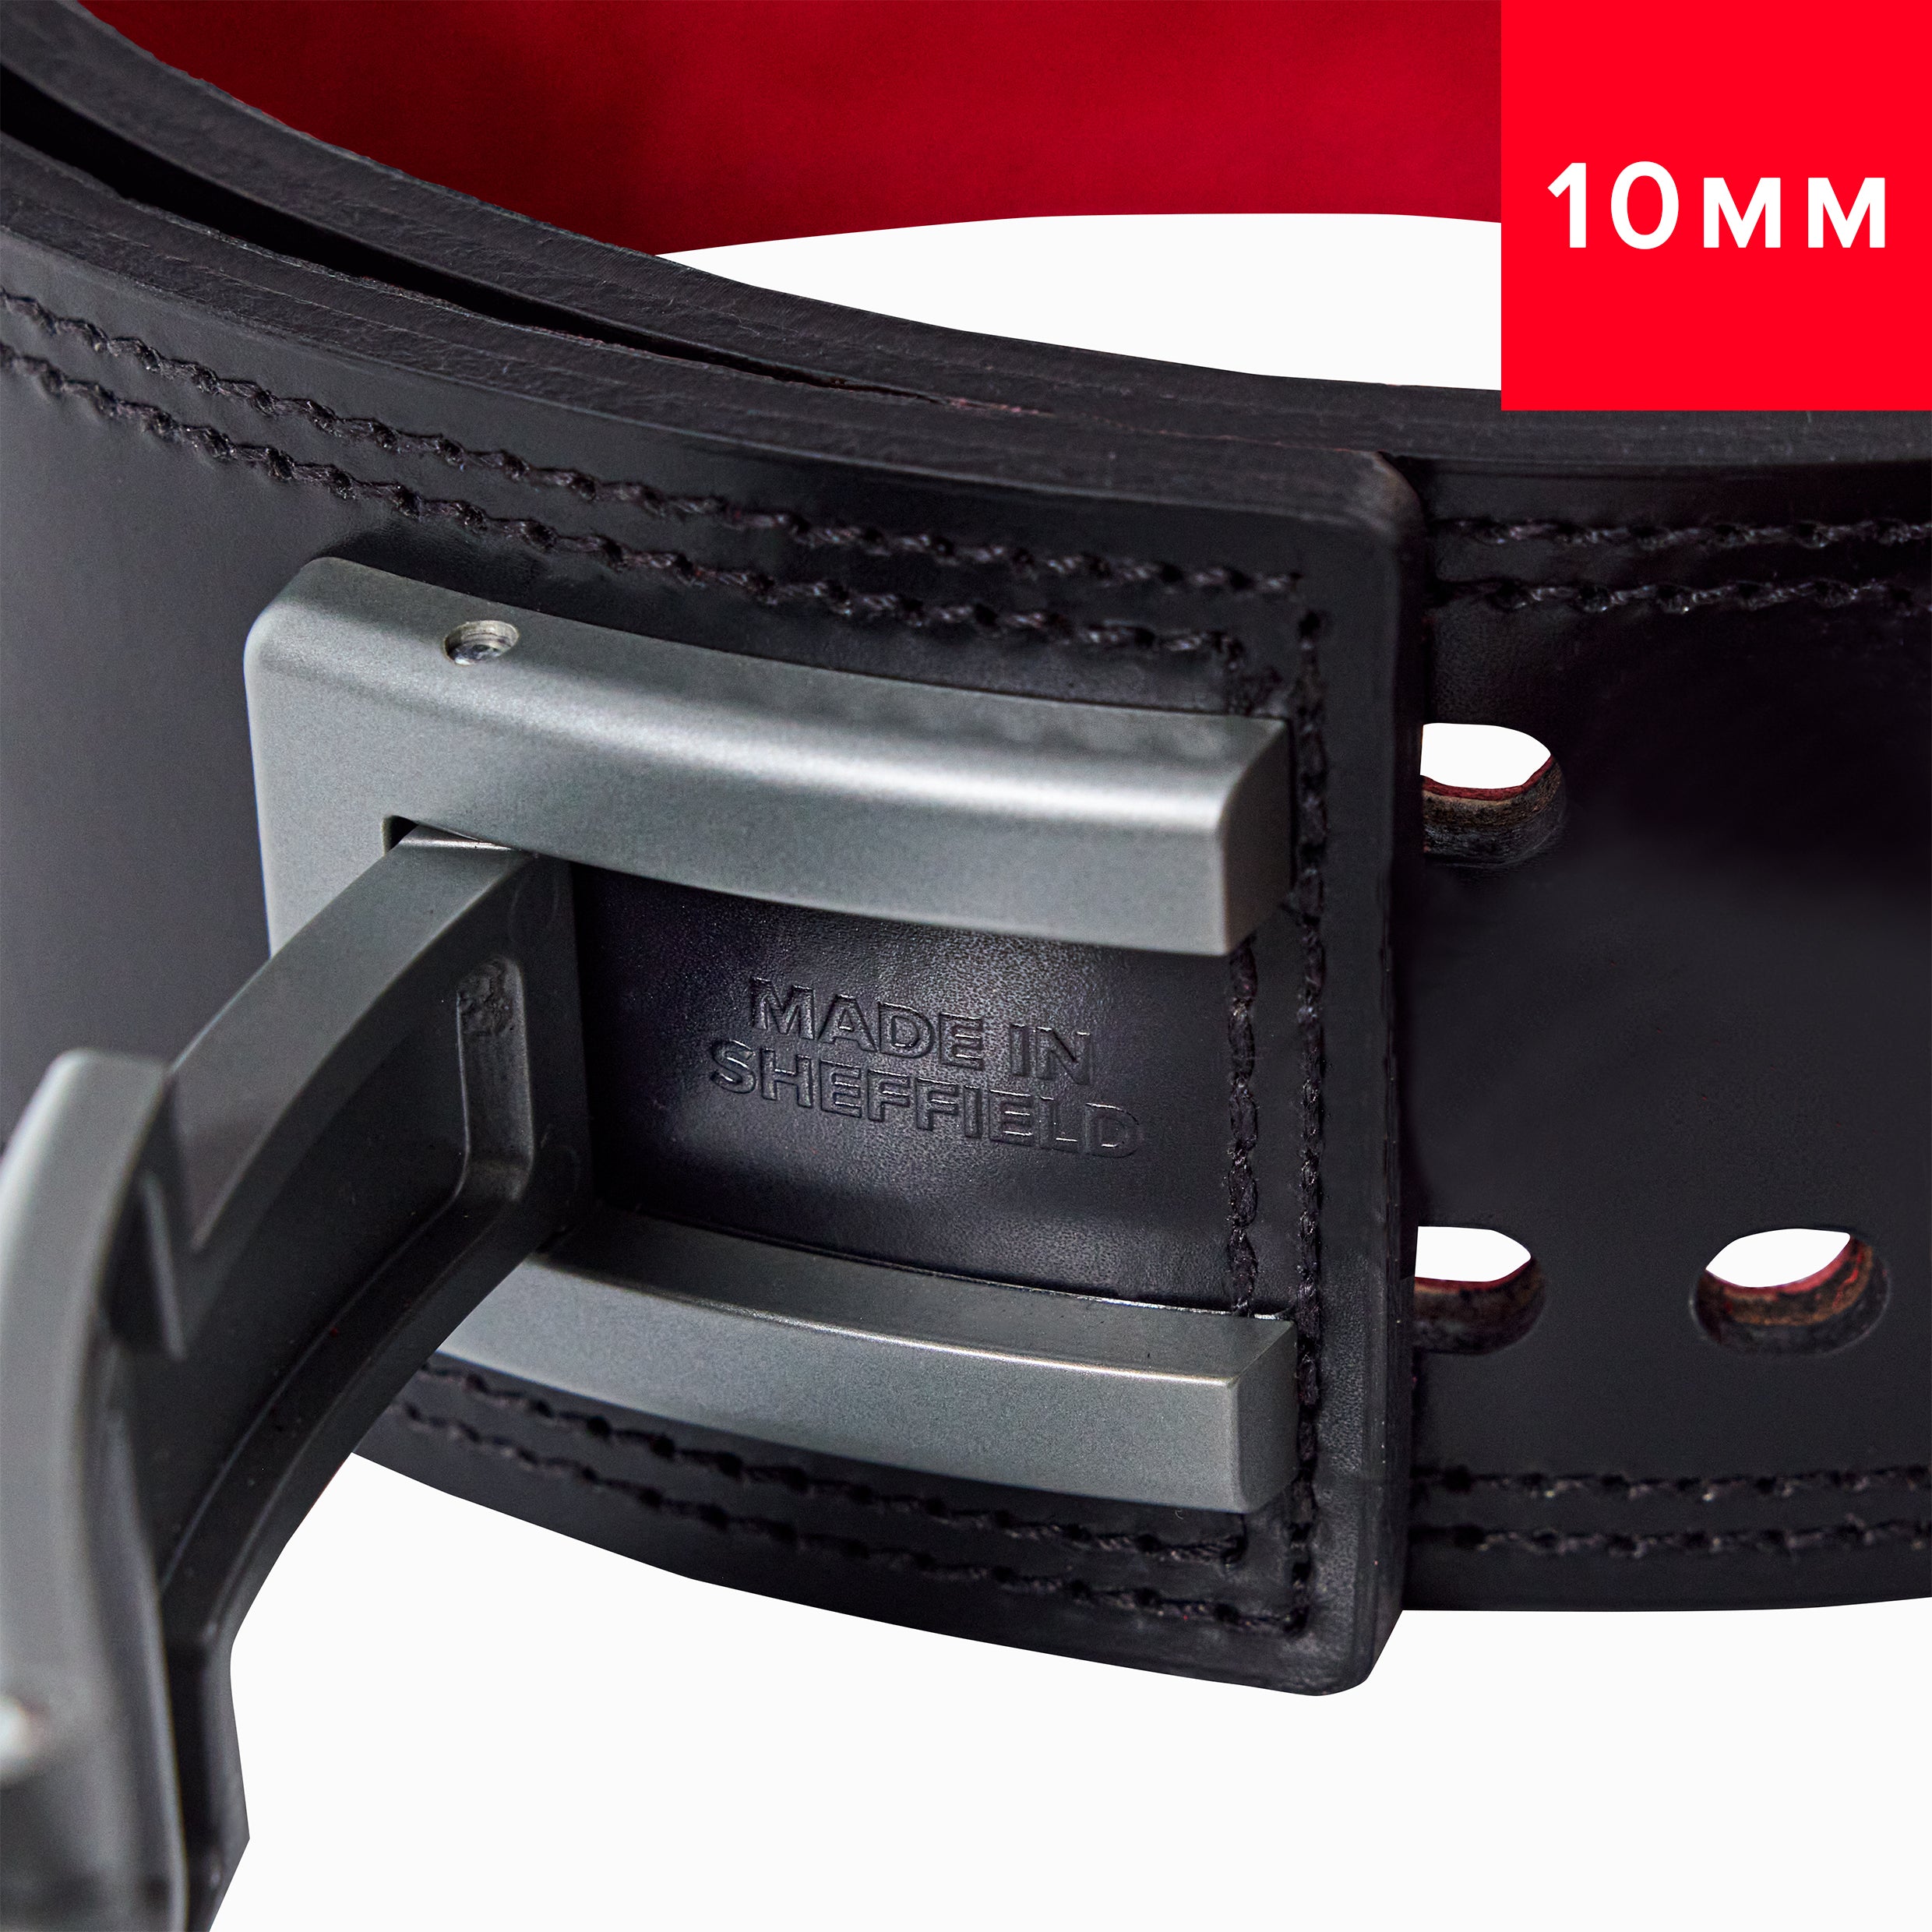 SBD 10mm Lever Belt